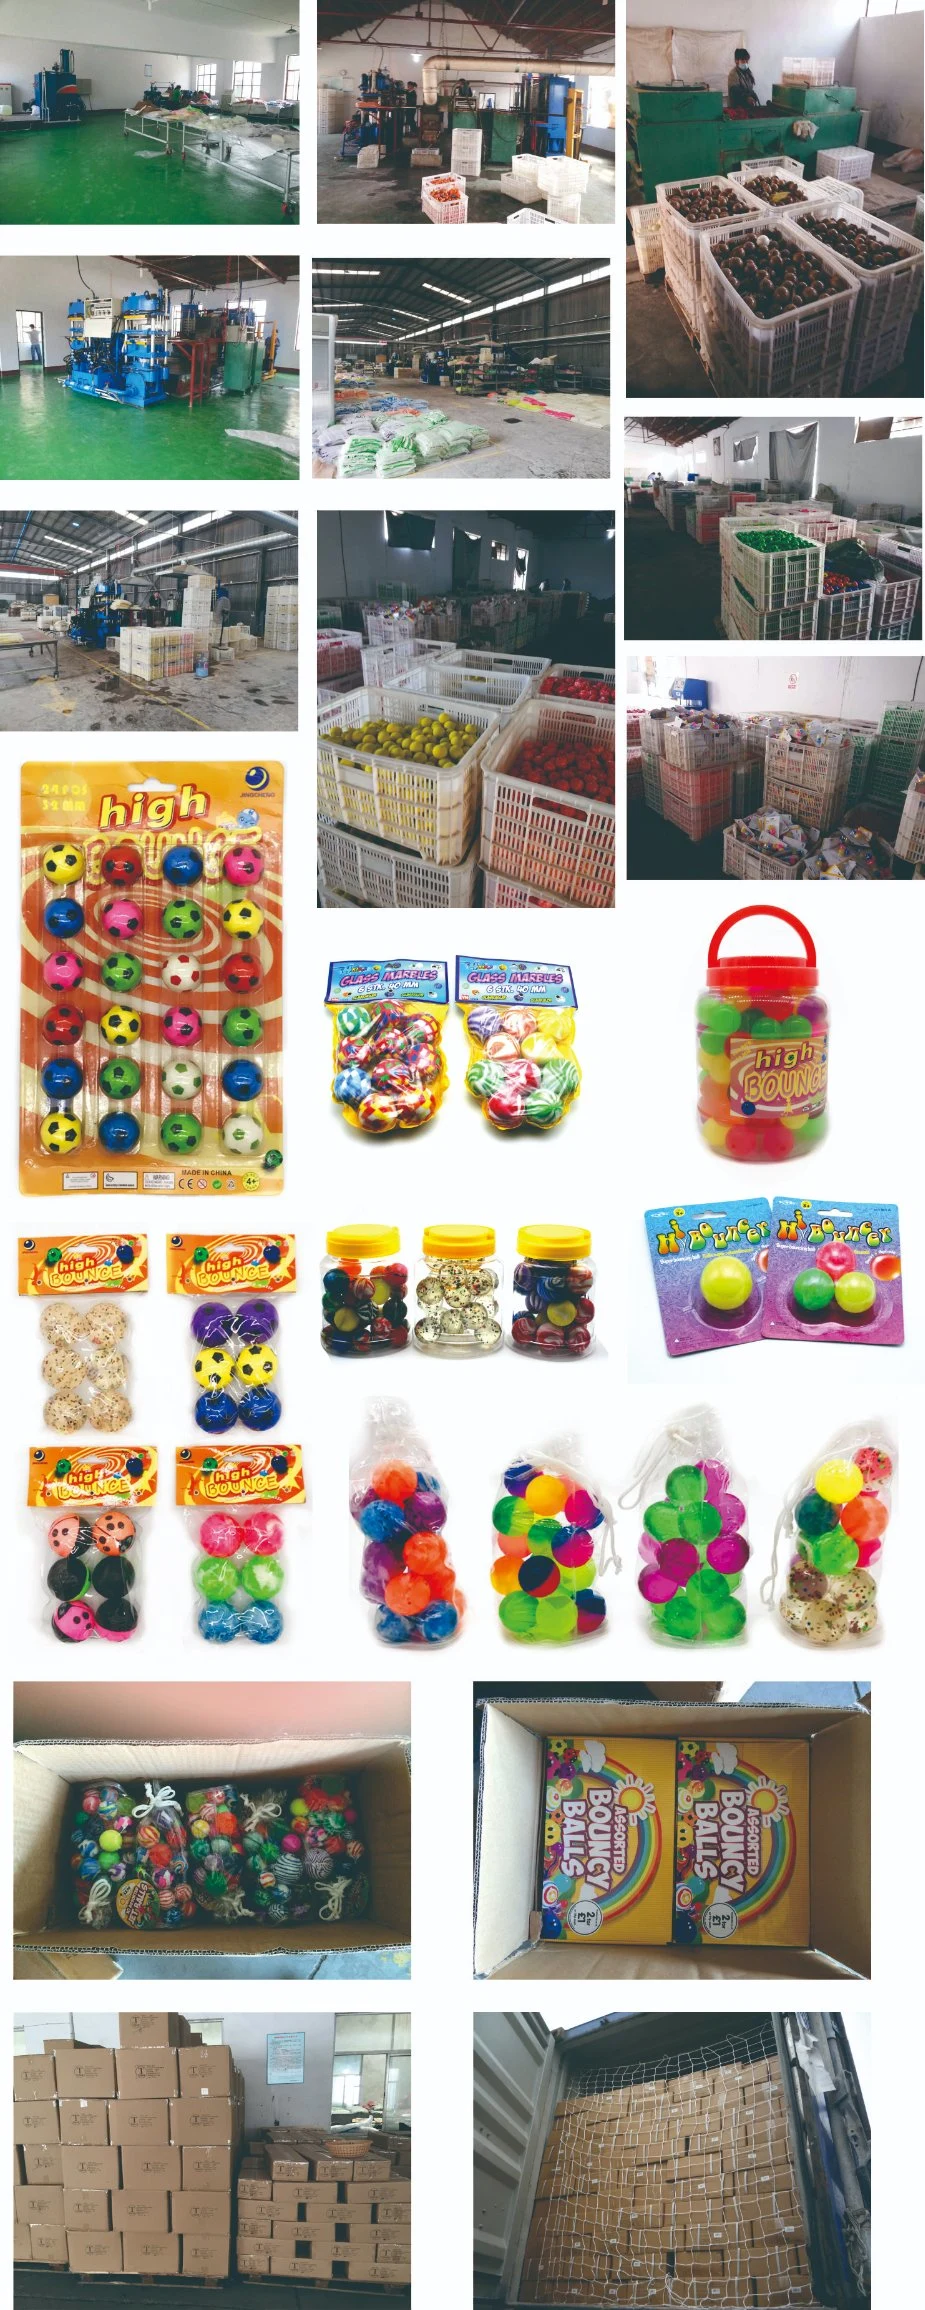 Jumping Ball, Rubber Ball, Stress Ball, Vending Toys, Bounce Ball, Children Toy